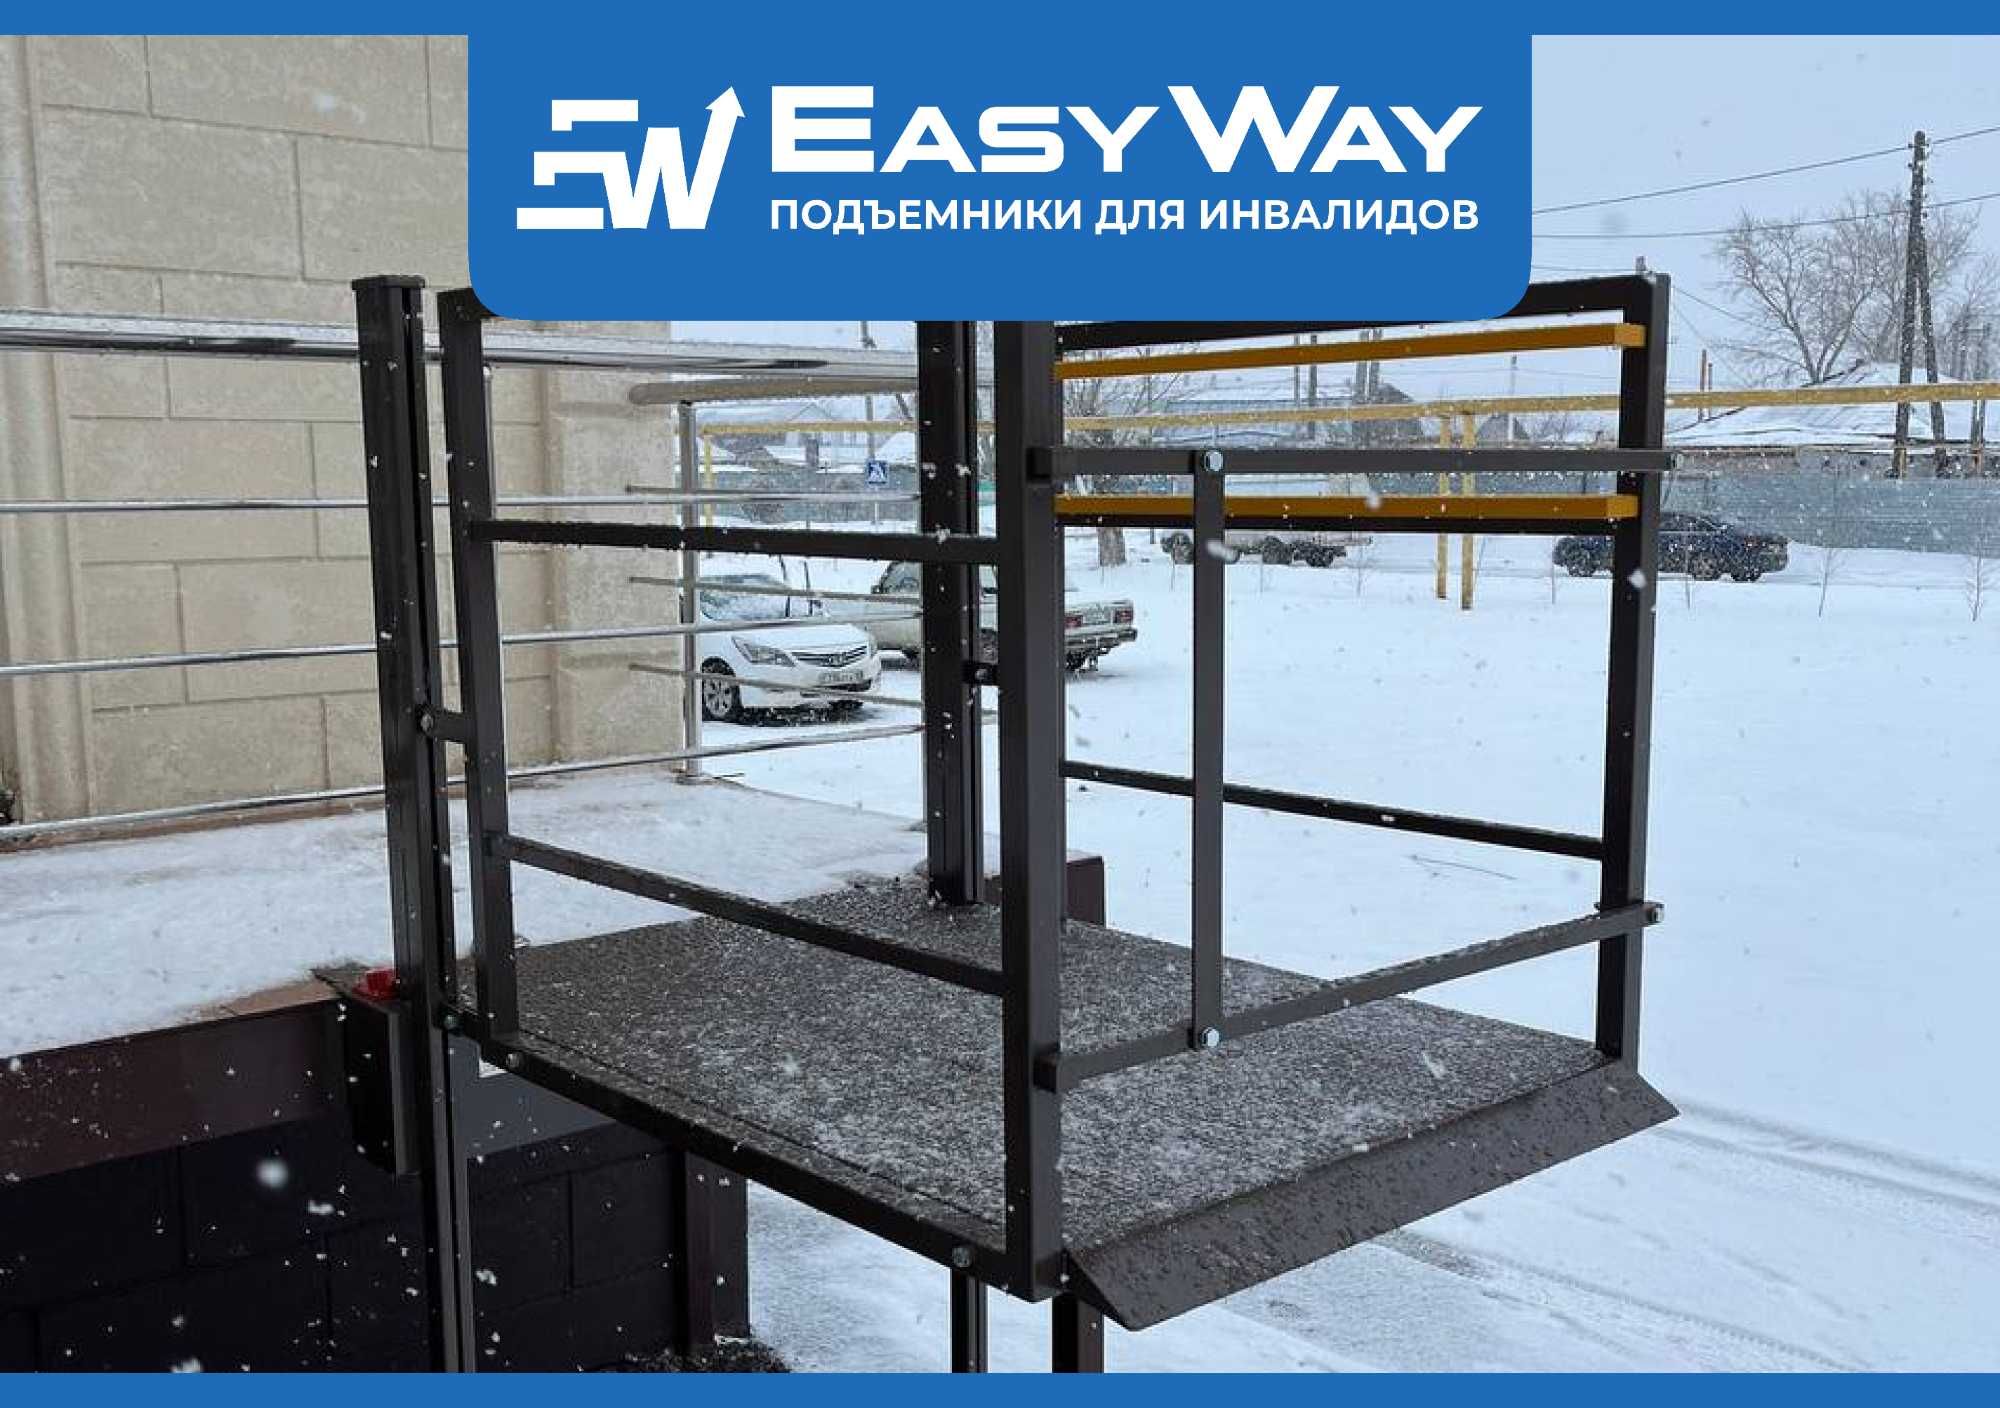 EasyWay: Подъёмники для инвалидов колясочников (г. Петропавловск)